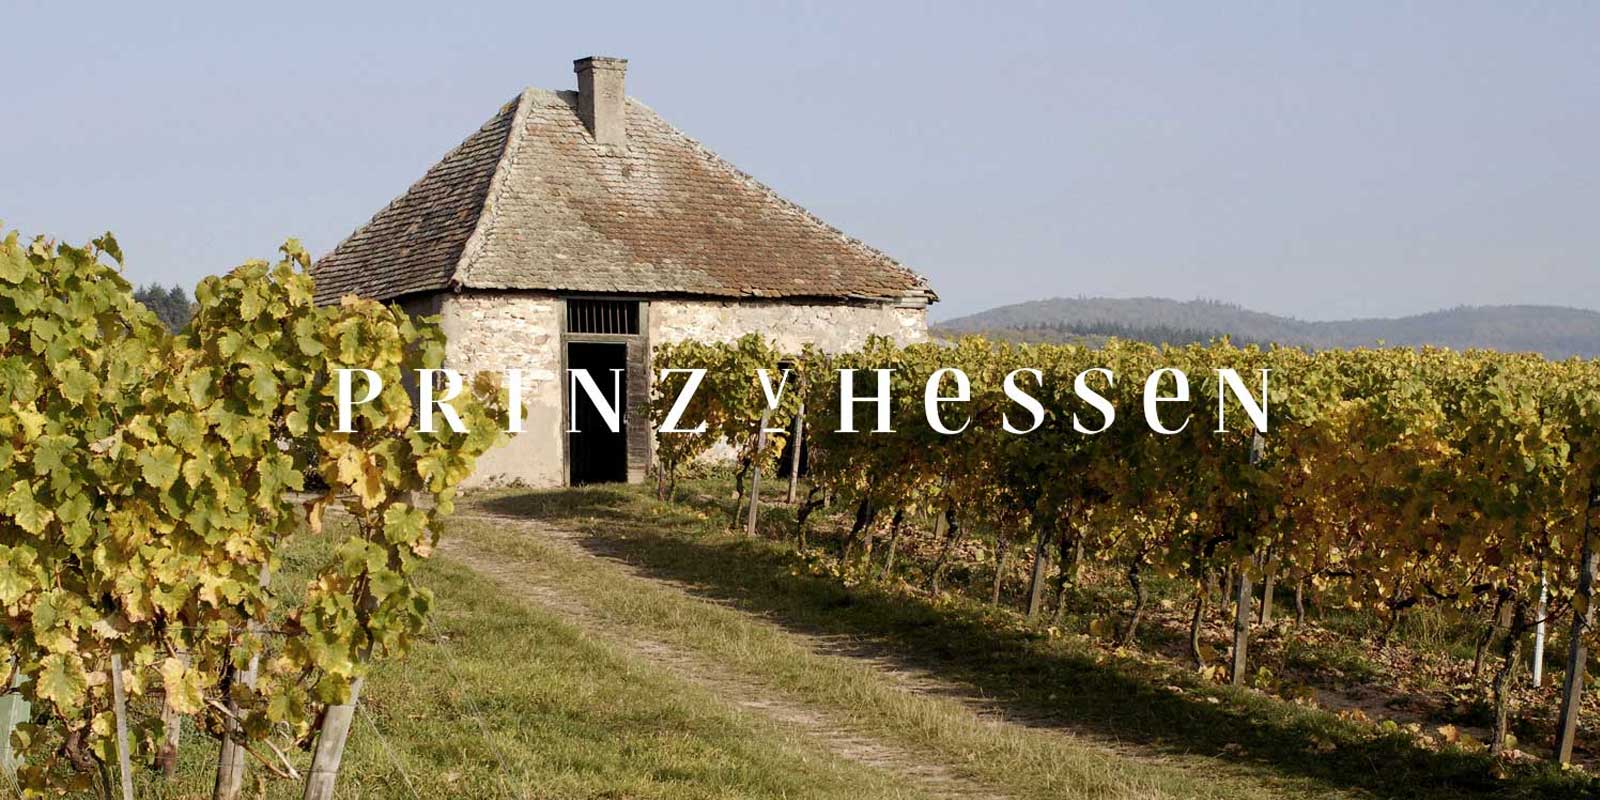 Wijnmakerij Prins van Hessen - wijnstreek Rheingau De wijnmakerij PRINZ VON HESSEN in Johannisberg in de Rheingau is een van de vooraanstaande Rieslingproducenten in Duitsland en is een van de oprichters van de VDP van de regionale vereniging Rheingau. Talrijke erkenningen in binnen- en buitenland weerspiegelen het wijnhuis PRINZ VON HESSEN, dat zich op het hoogste niveau bevindt. Wijnen en mousserende wijnen van wijnmakerij PRINZ VON HESSEN hebben vele prijzen gewonnen en hoge internationale onderscheidingen ontvangen.